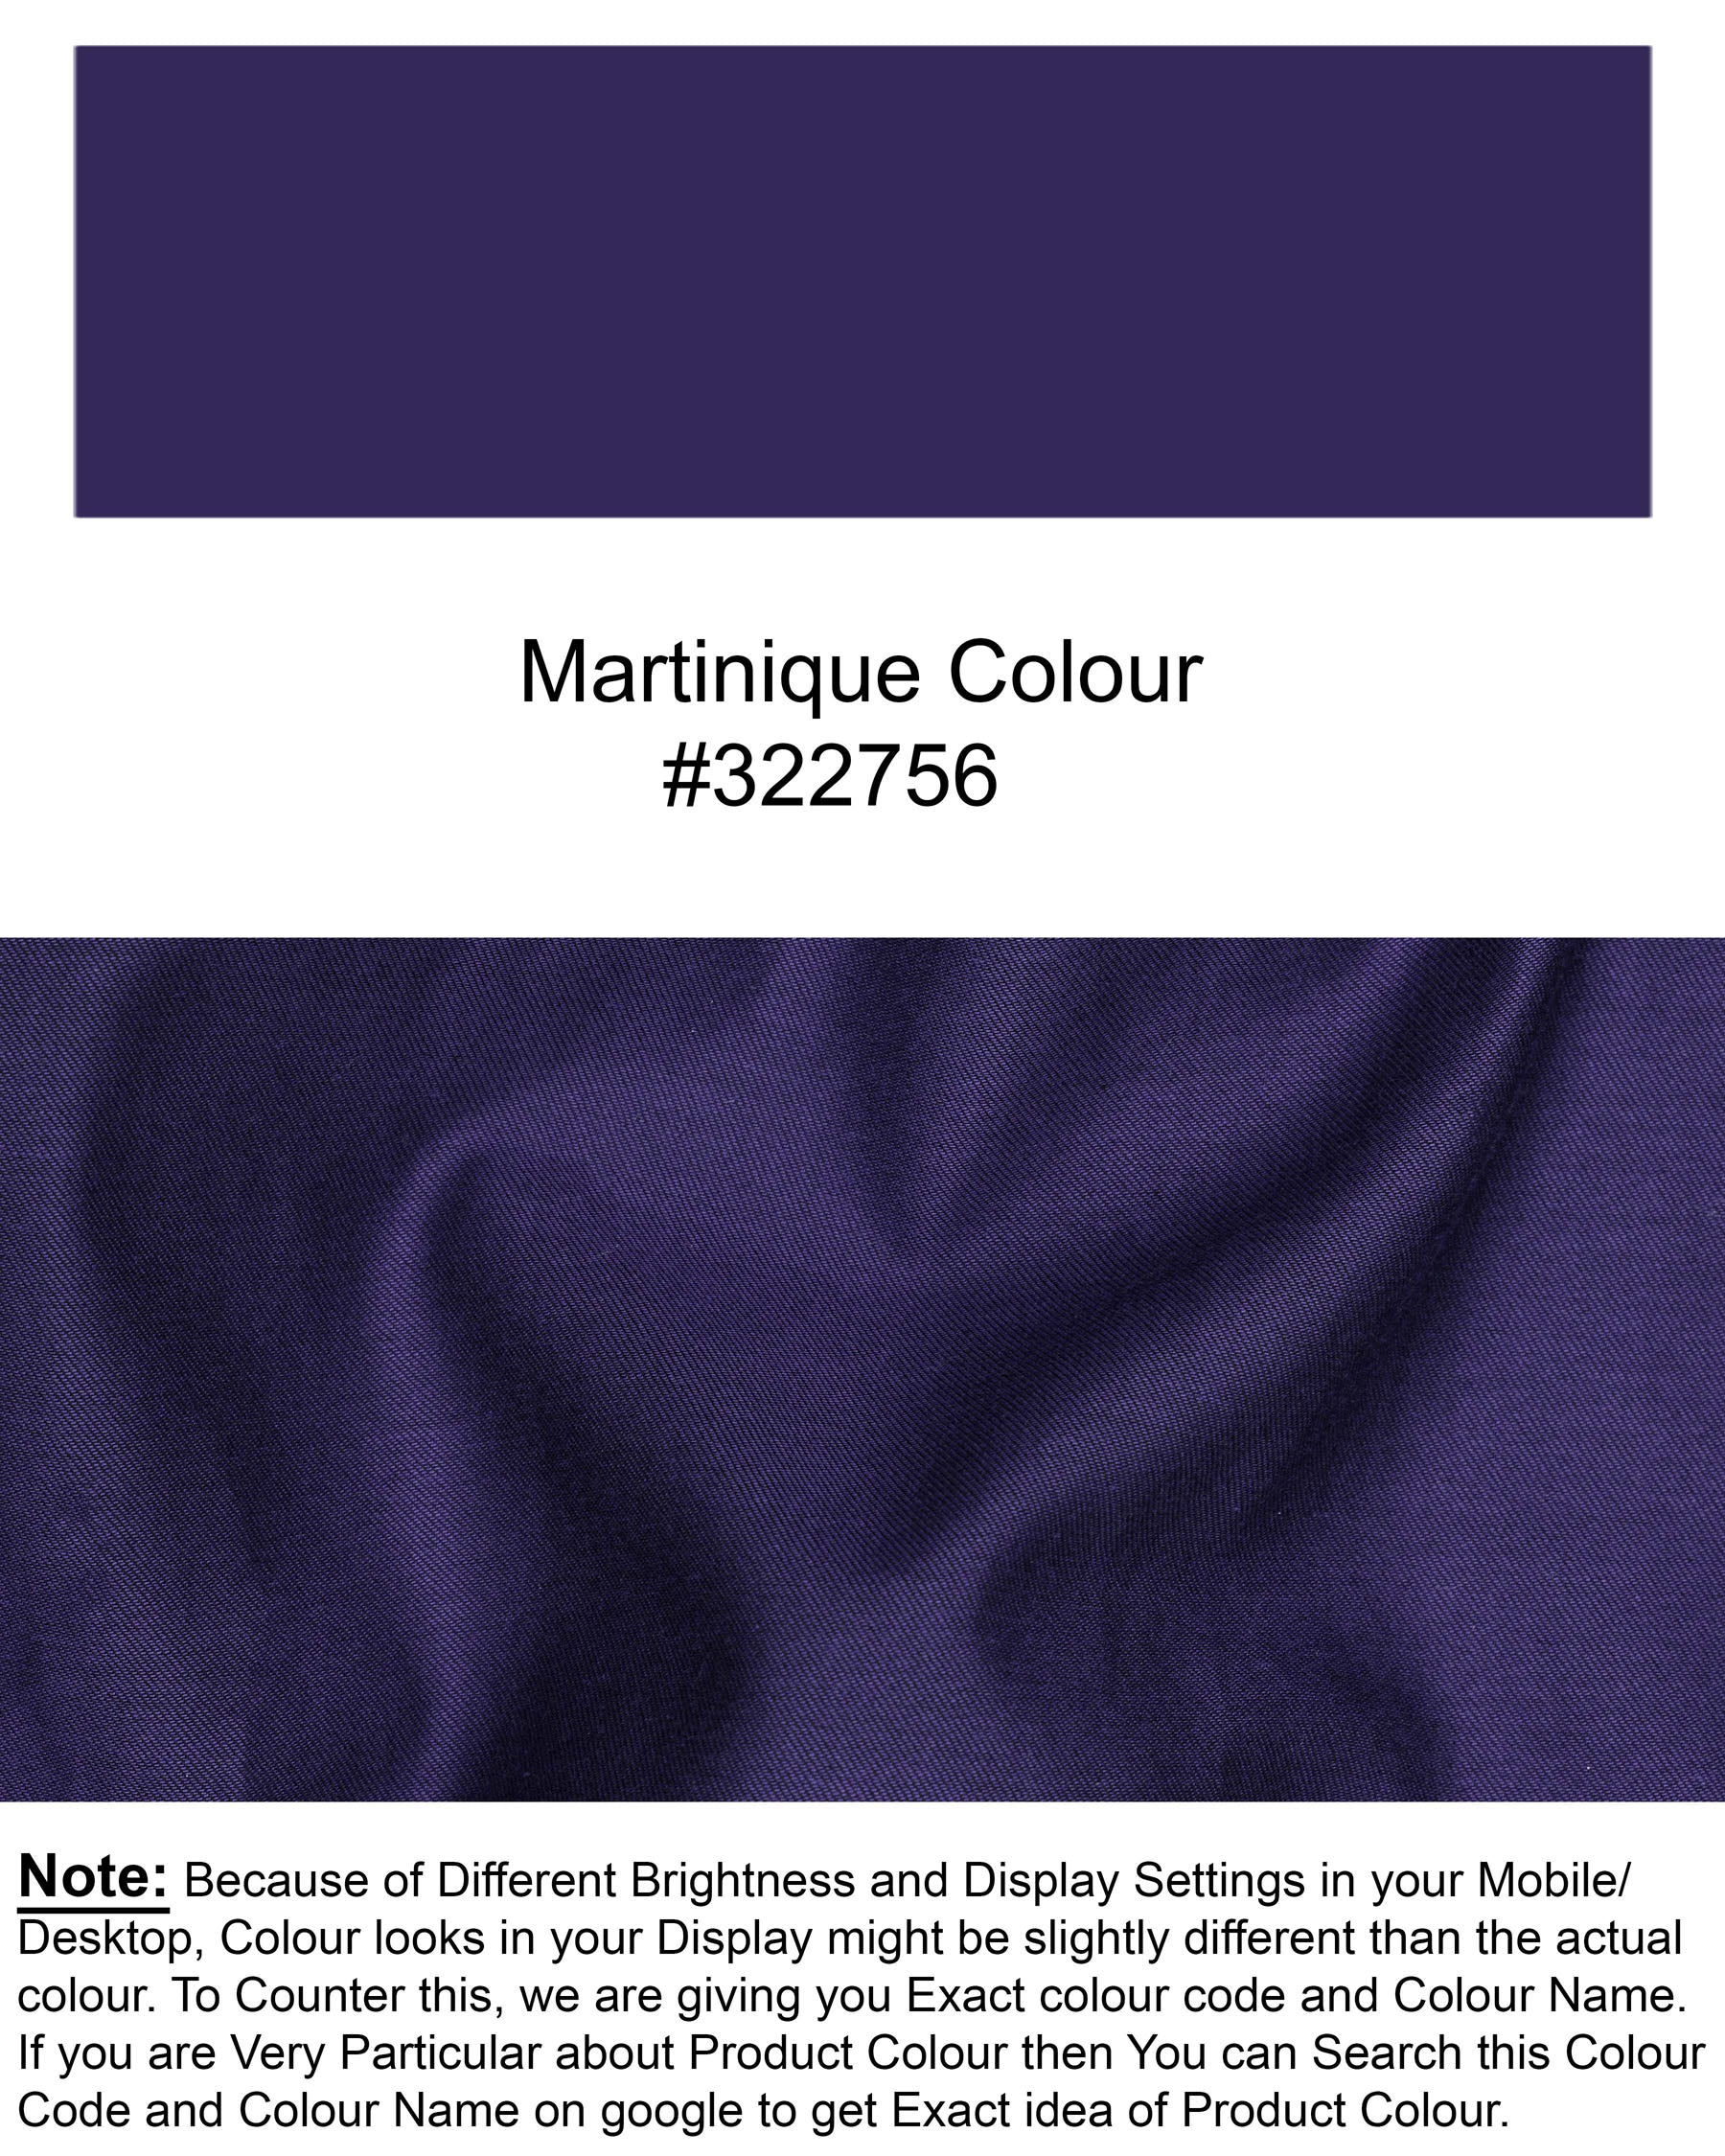 Martinique Blue Super Soft Premium Cotton Shirt 6798-BLE-38,6798-BLE-38,6798-BLE-39,6798-BLE-39,6798-BLE-40,6798-BLE-40,6798-BLE-42,6798-BLE-42,6798-BLE-44,6798-BLE-44,6798-BLE-46,6798-BLE-46,6798-BLE-48,6798-BLE-48,6798-BLE-50,6798-BLE-50,6798-BLE-52,6798-BLE-52